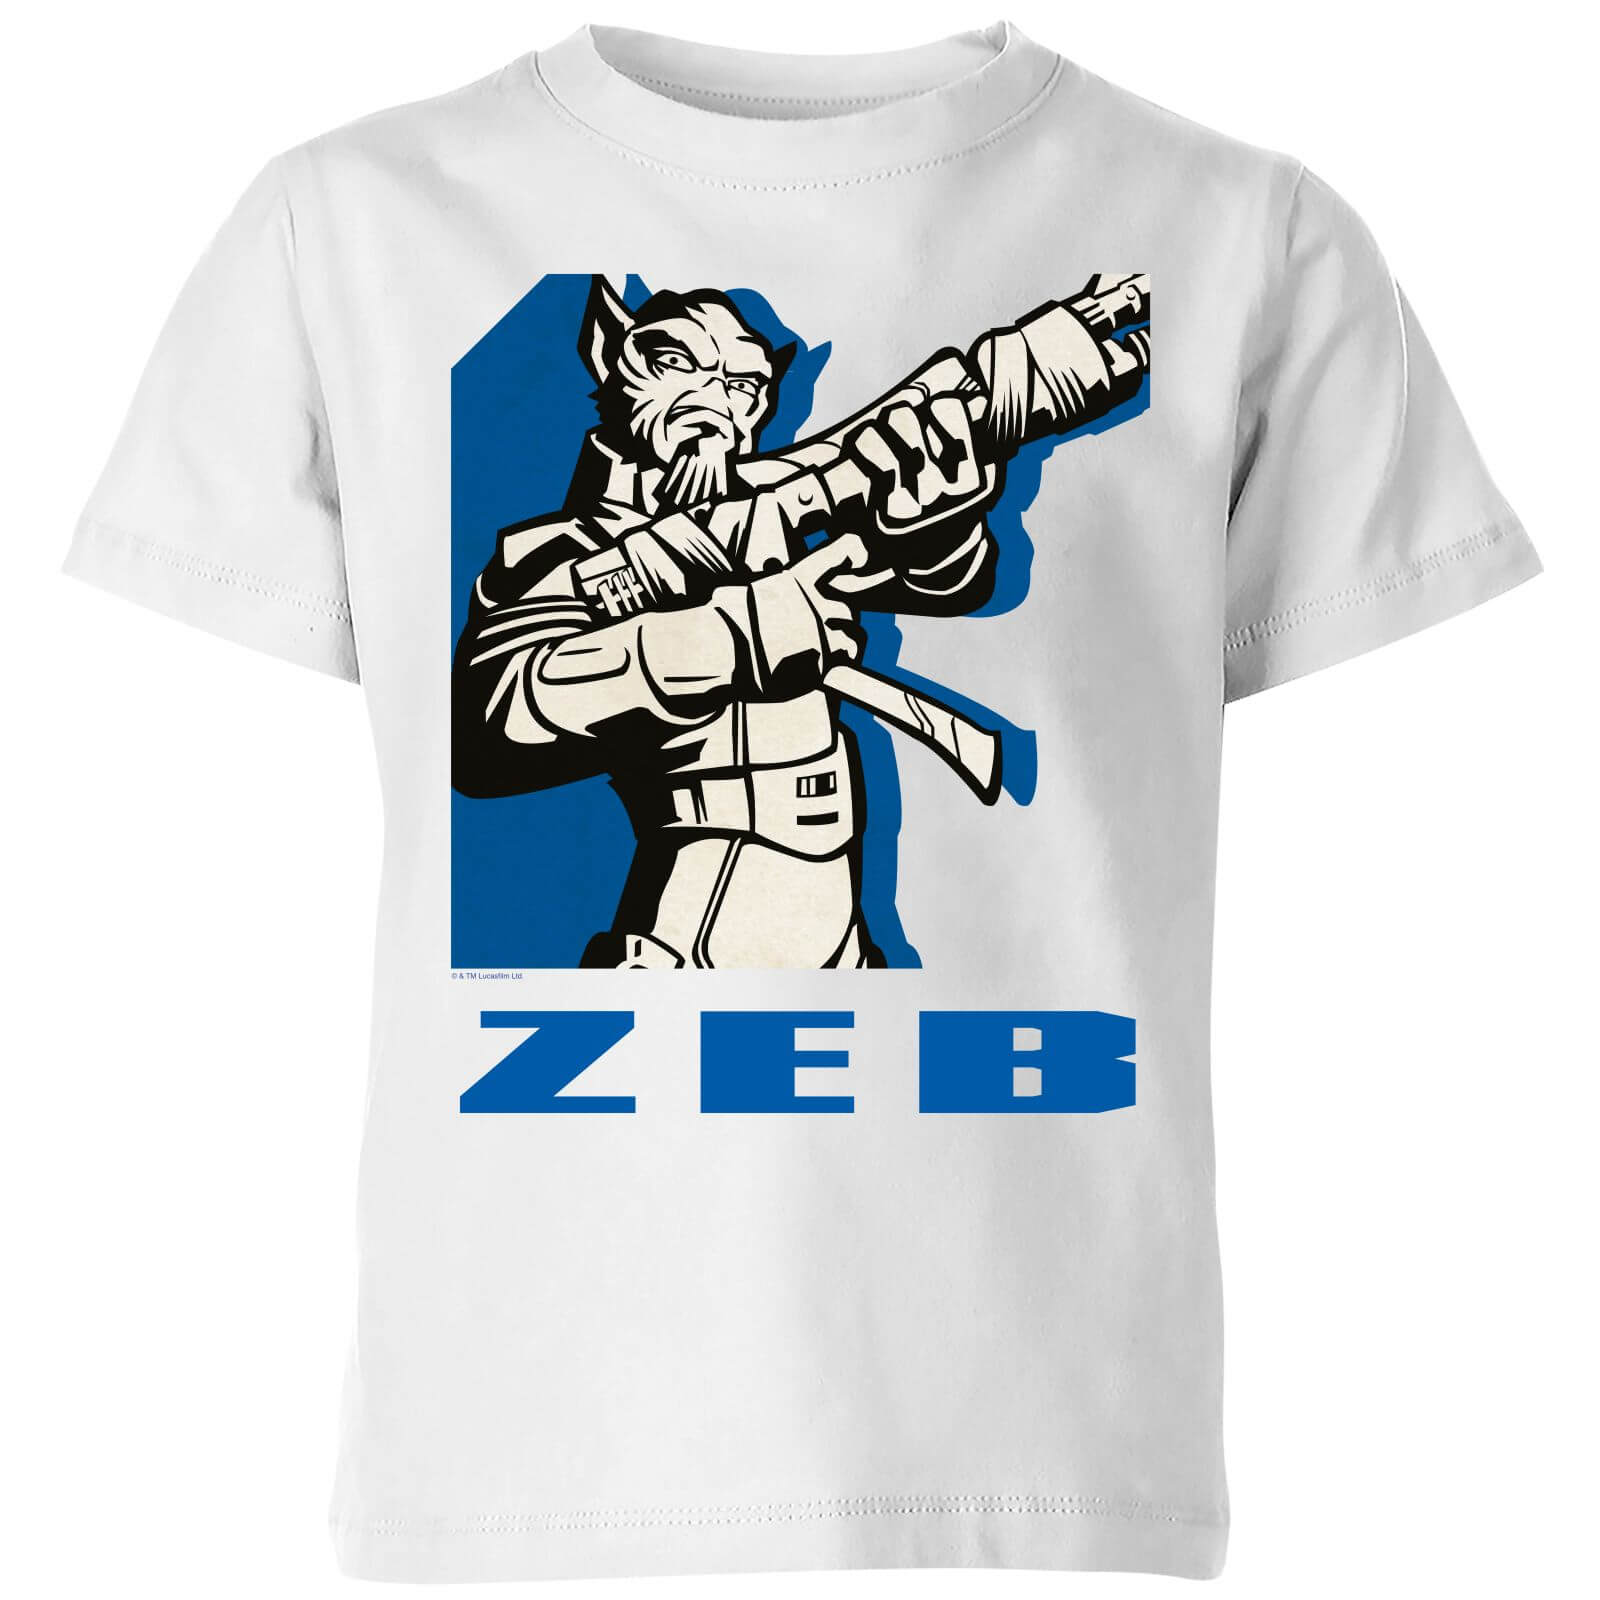 Star Wars Rebels Zeb Kids' T-Shirt - White - 11-12 Years - White